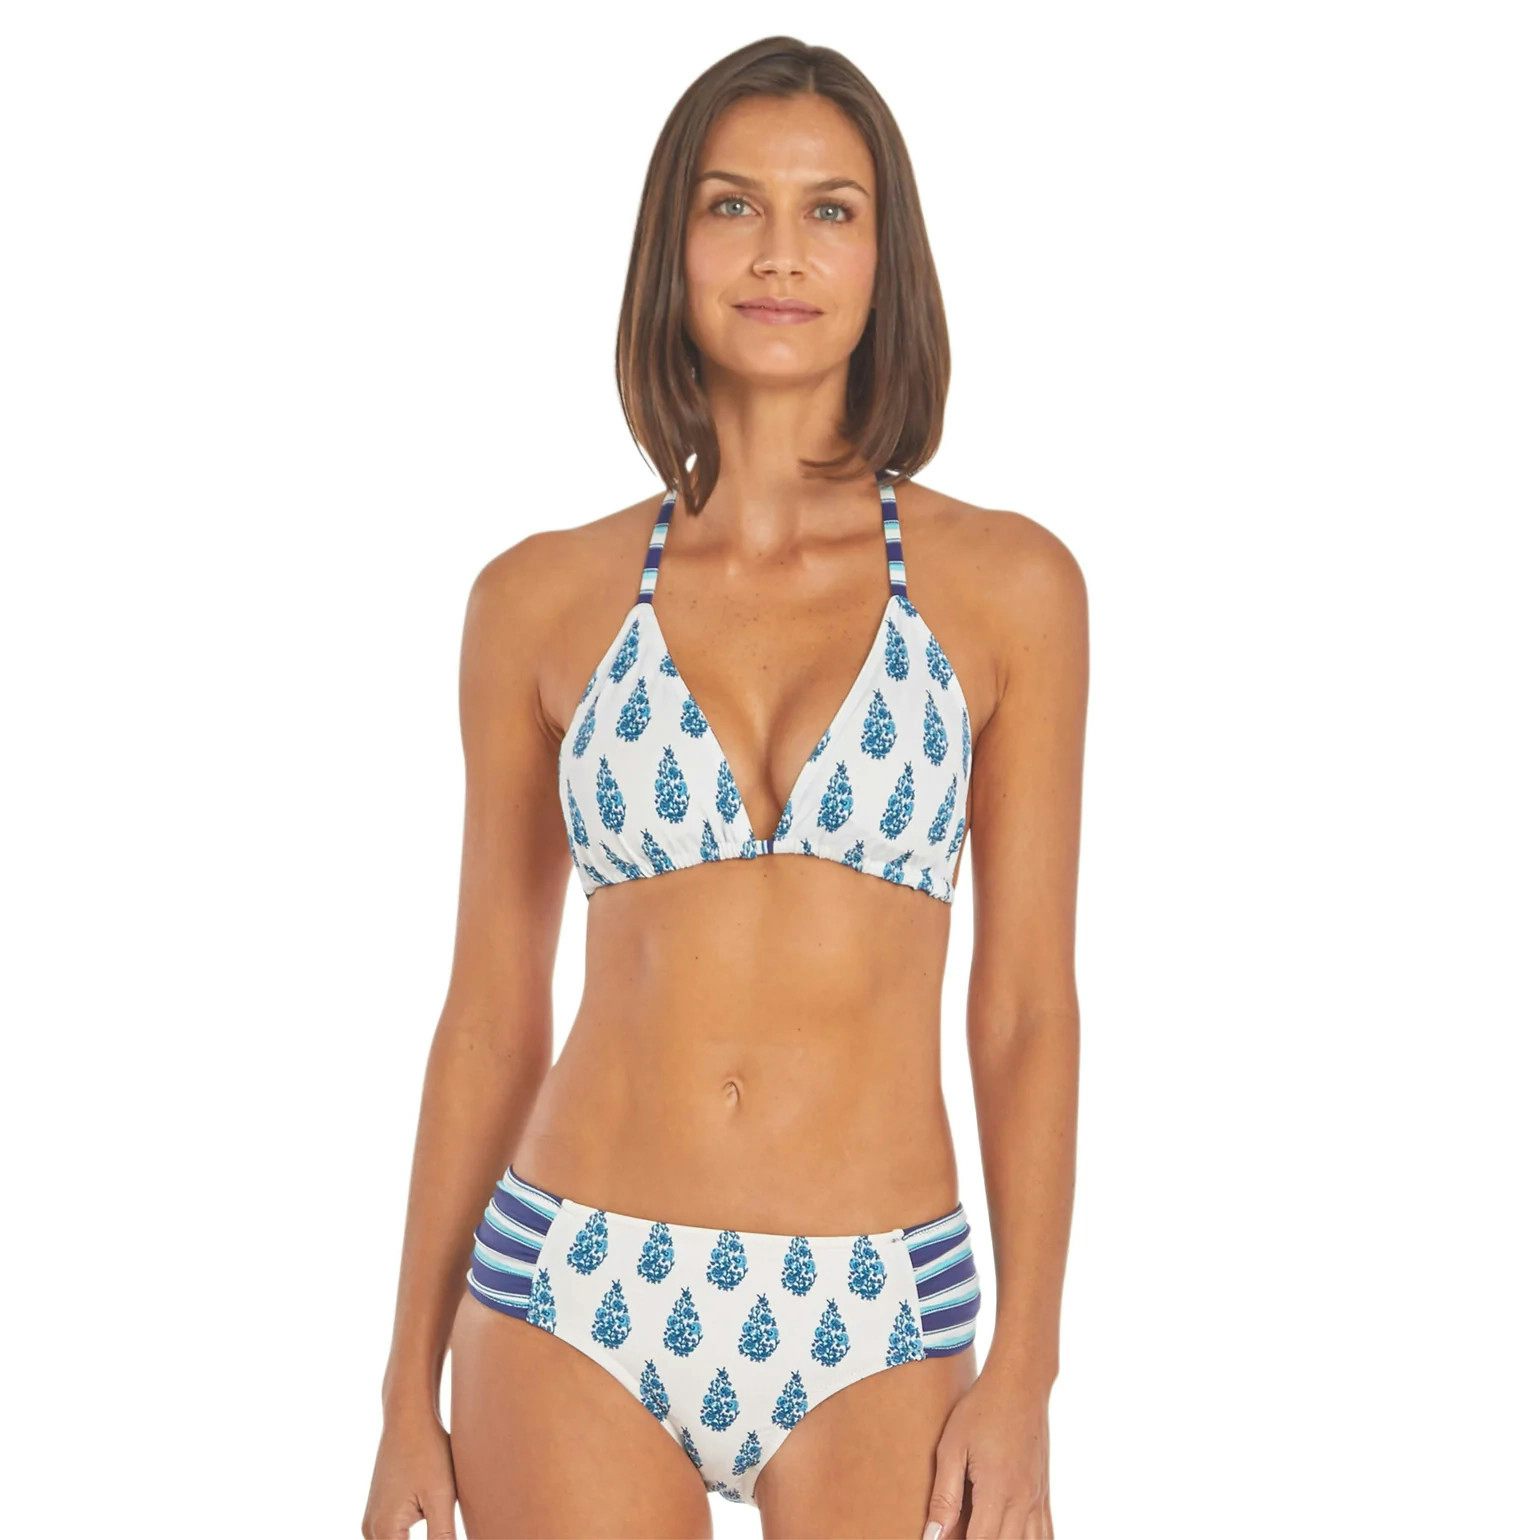 Cabana Life Delray Reversible Triangle Bikini Top